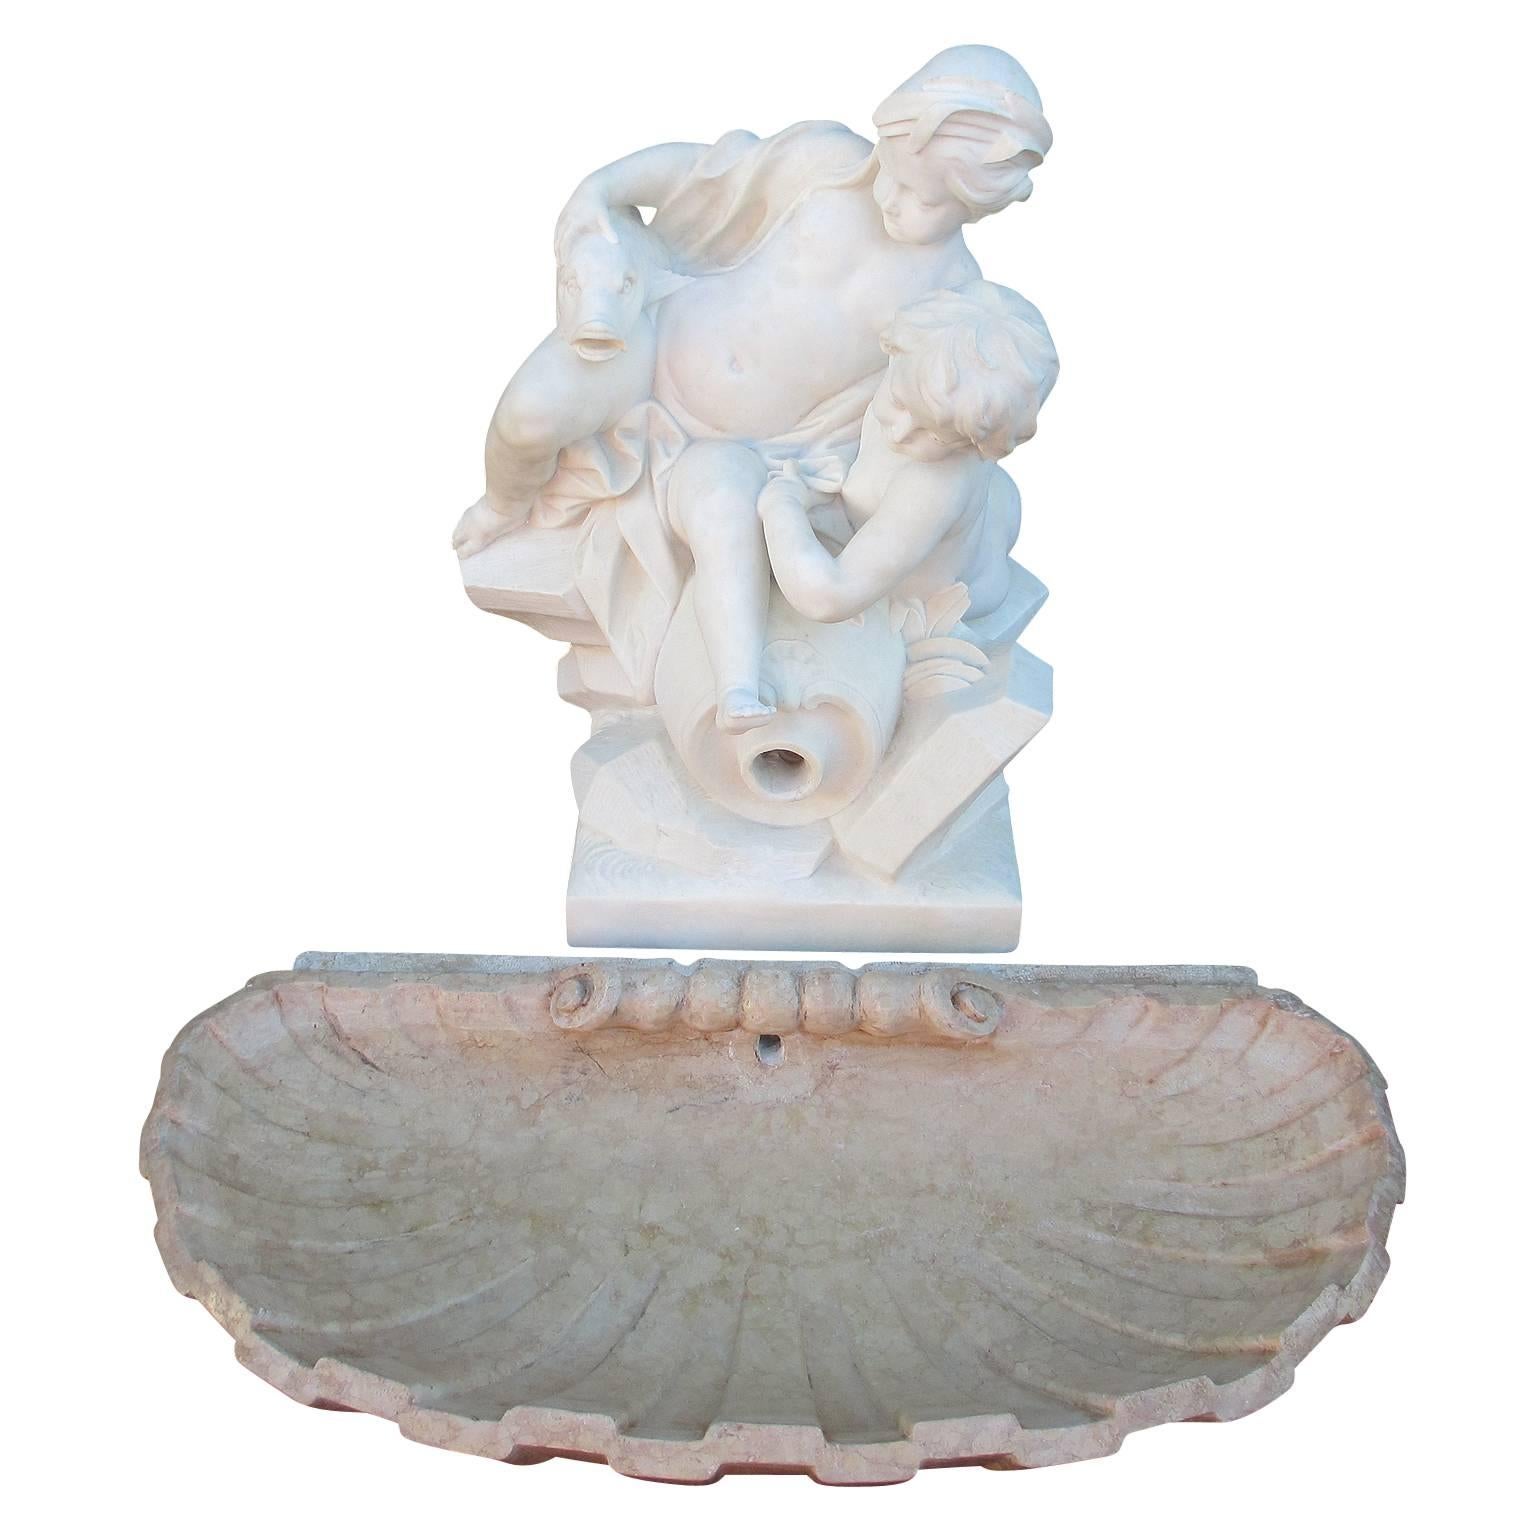 Eine schöne und reizvolle allegorische Gartenbrunnengruppe aus weißem Marmor aus dem 19. Jahrhundert mit zwei verspielten Putten, die auf einem Felsen sitzen, mit einer umgedrehten Amphore, die einen stilisierten Fisch trägt, der mit Wasser